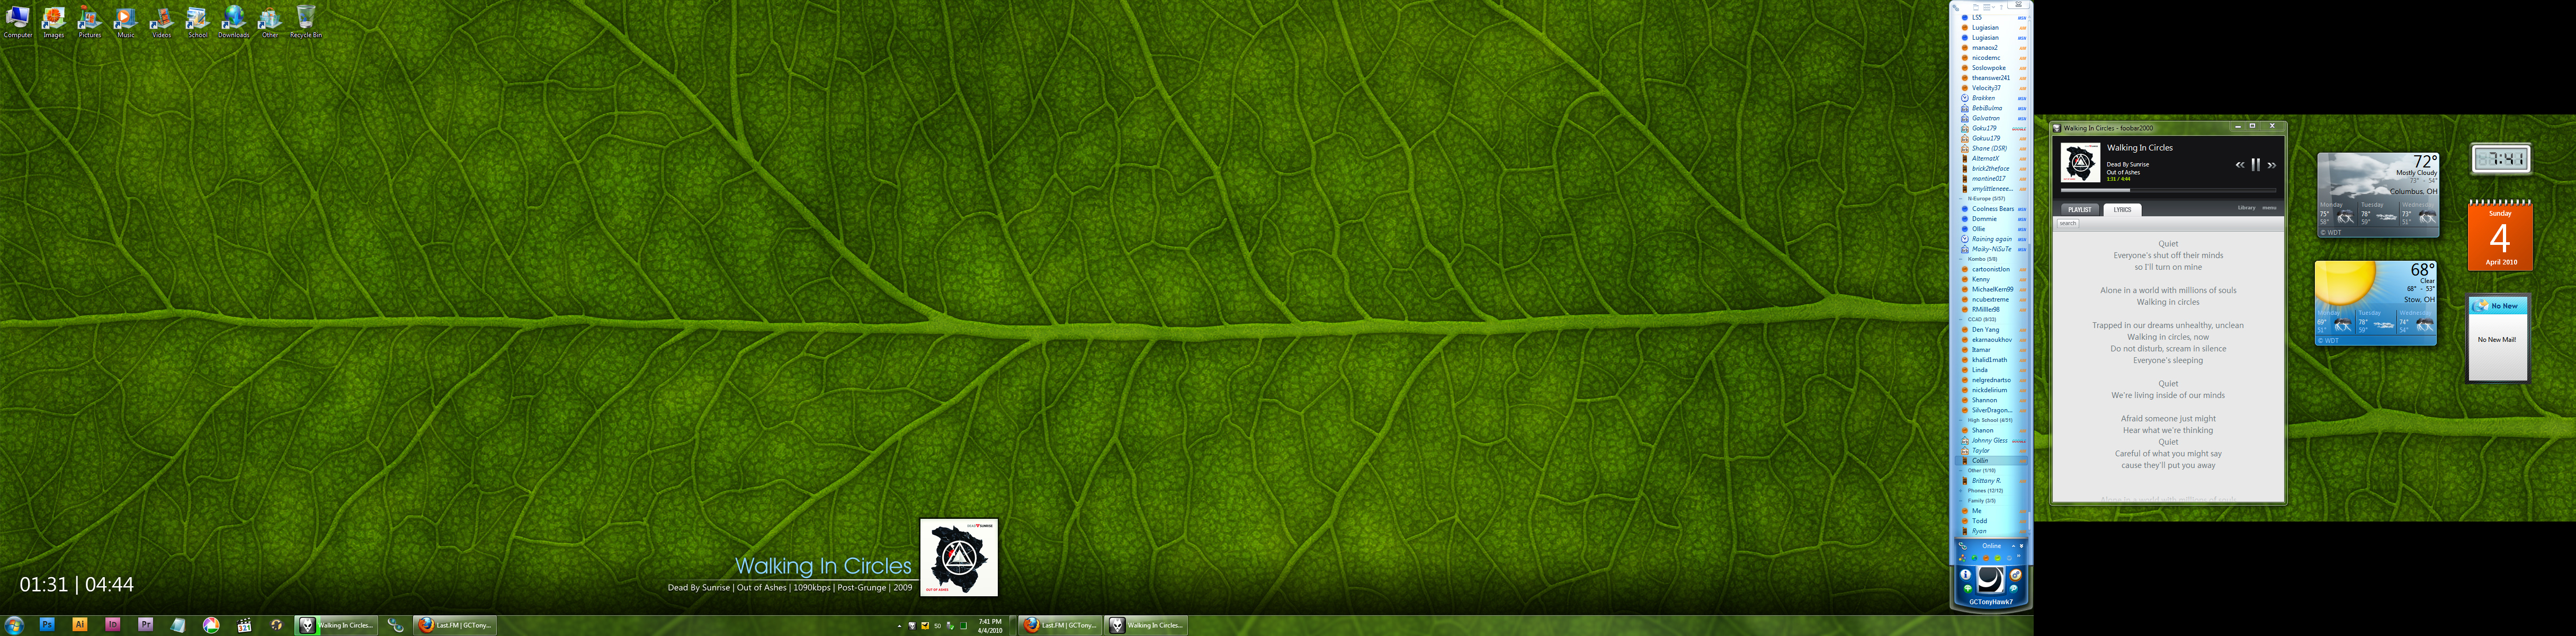 Desktop_4_4_2010_by_JustMarDesign.jpg